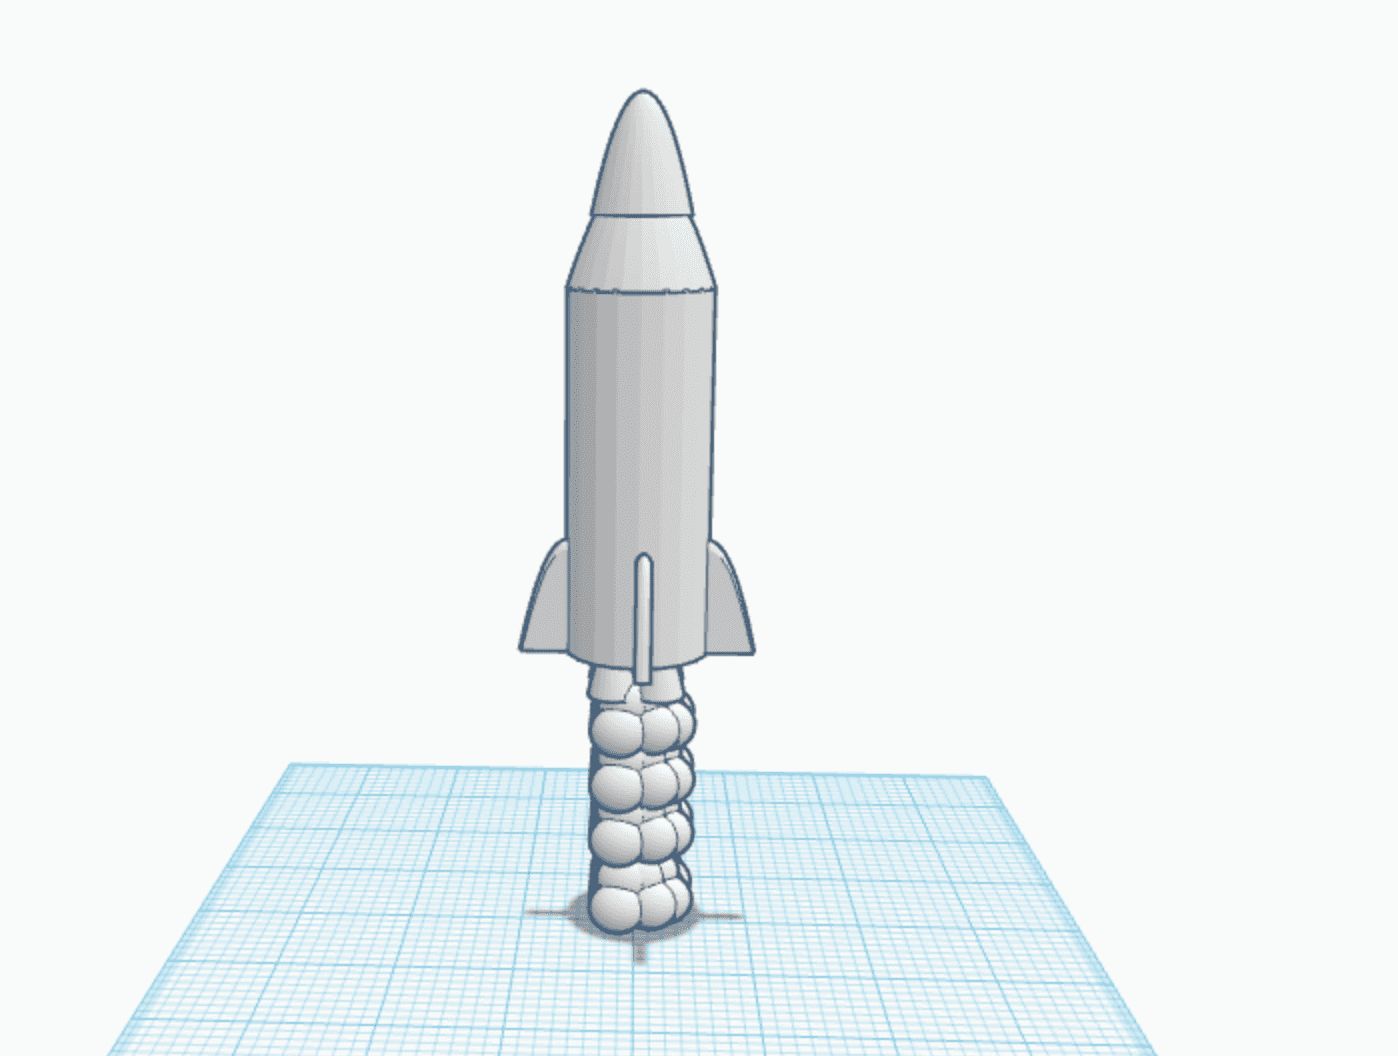 Desk toy Rocket 3d model